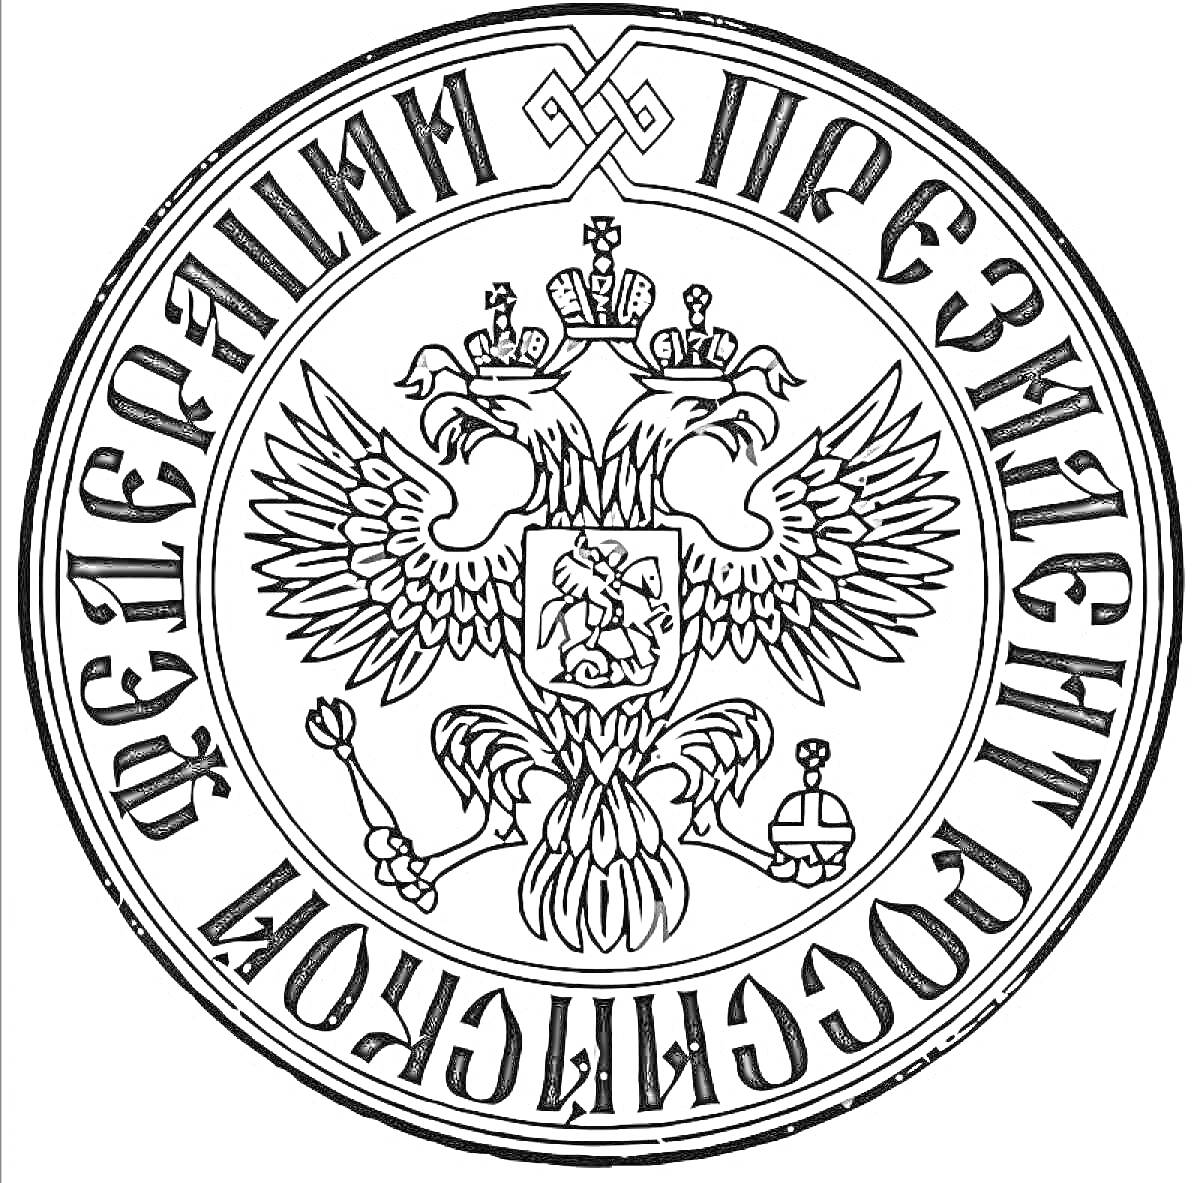 Герб президента Российской Федерации с двуглавым орлом и надписью по кругу